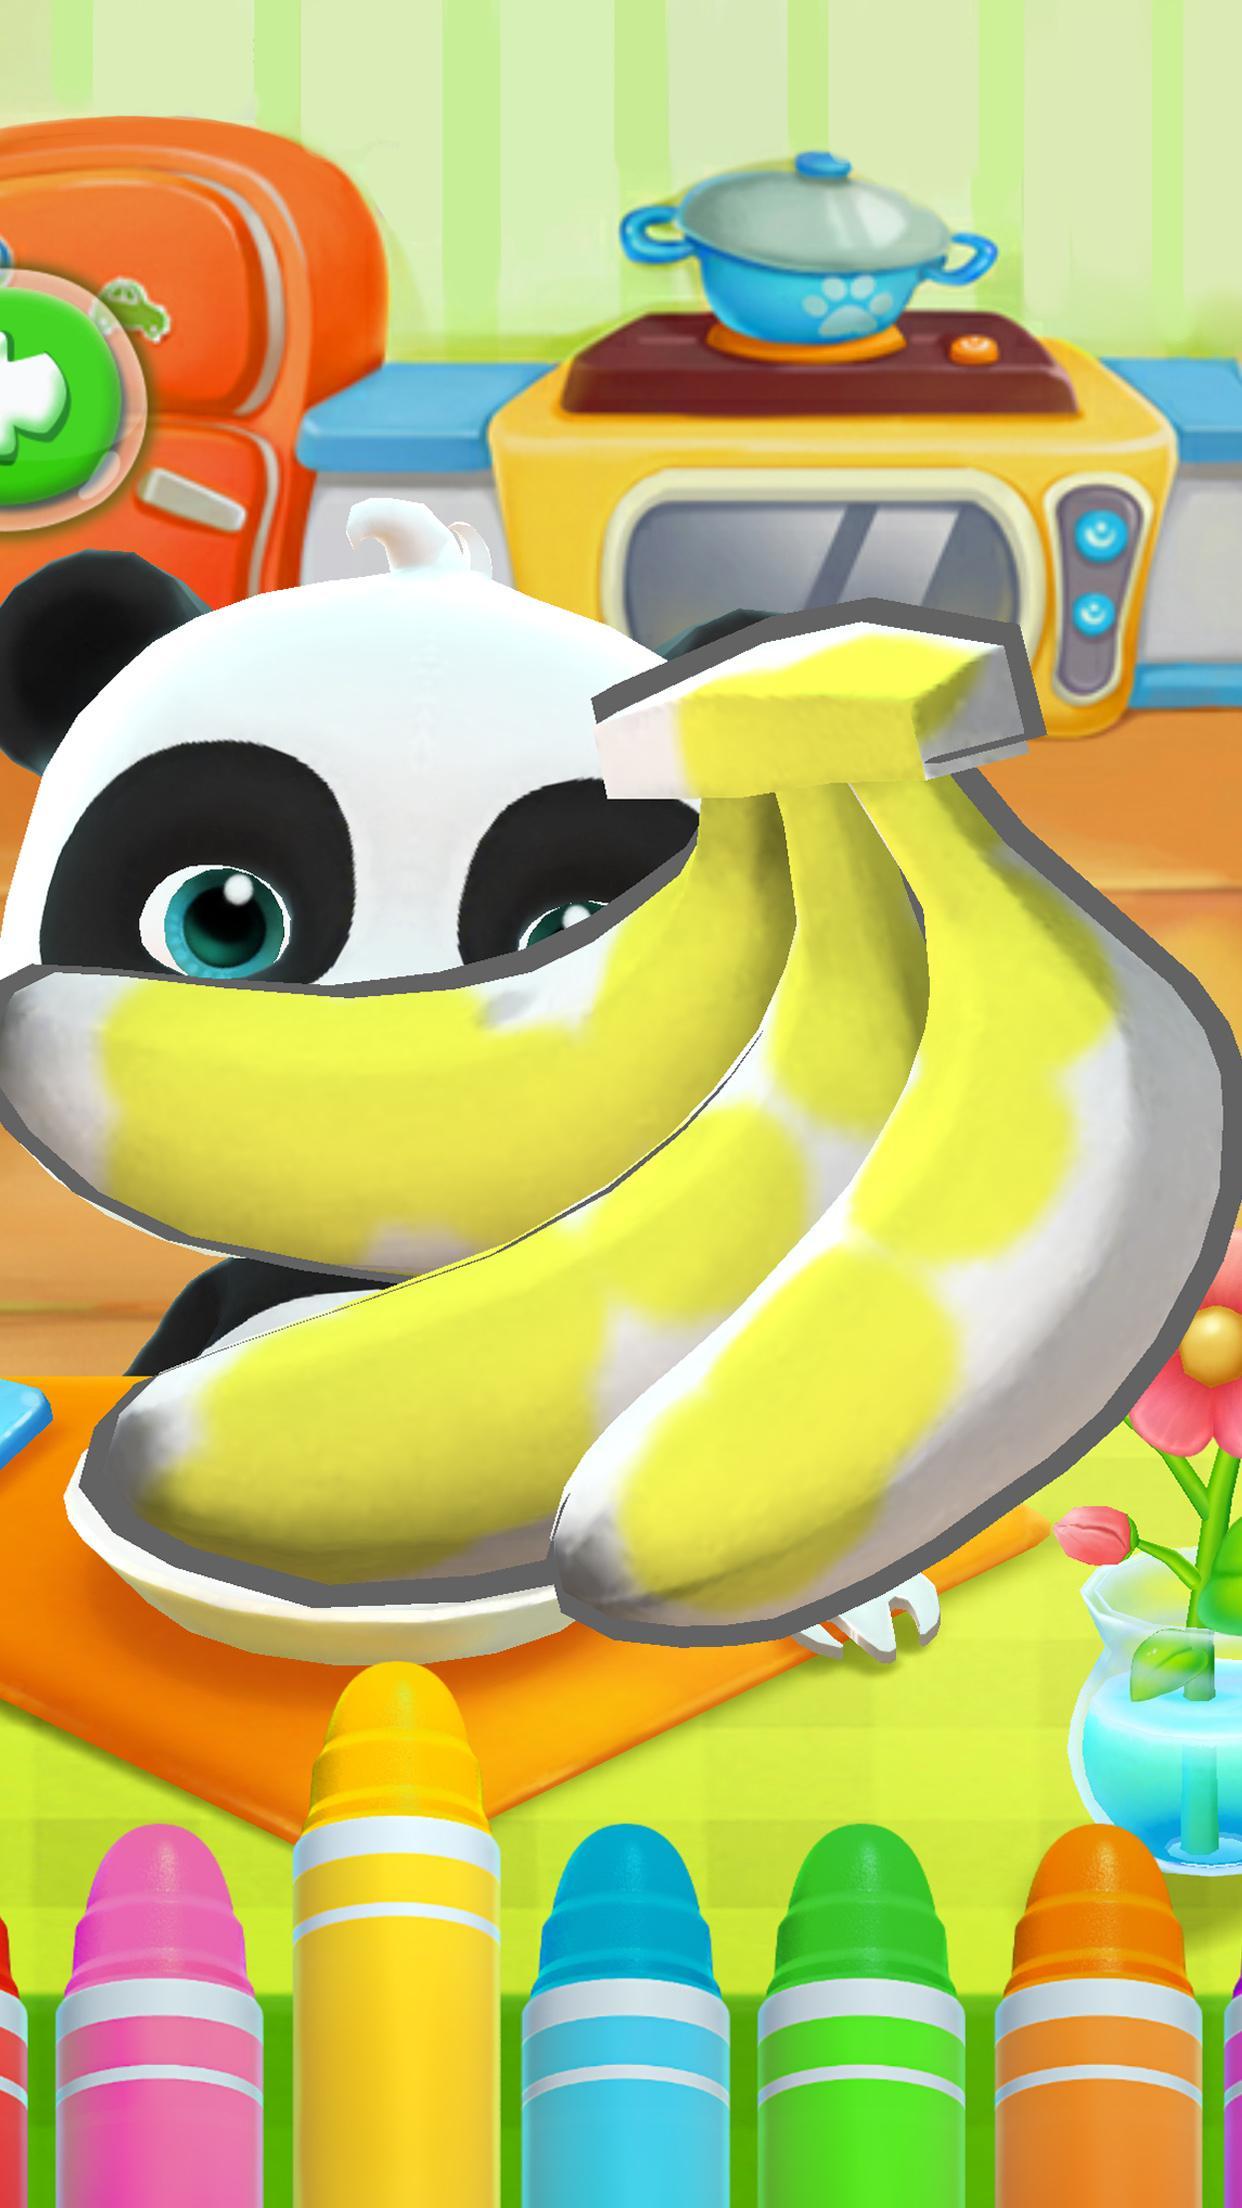 Talking Baby Panda - Kids Game 8.43.00.10 Screenshot 3